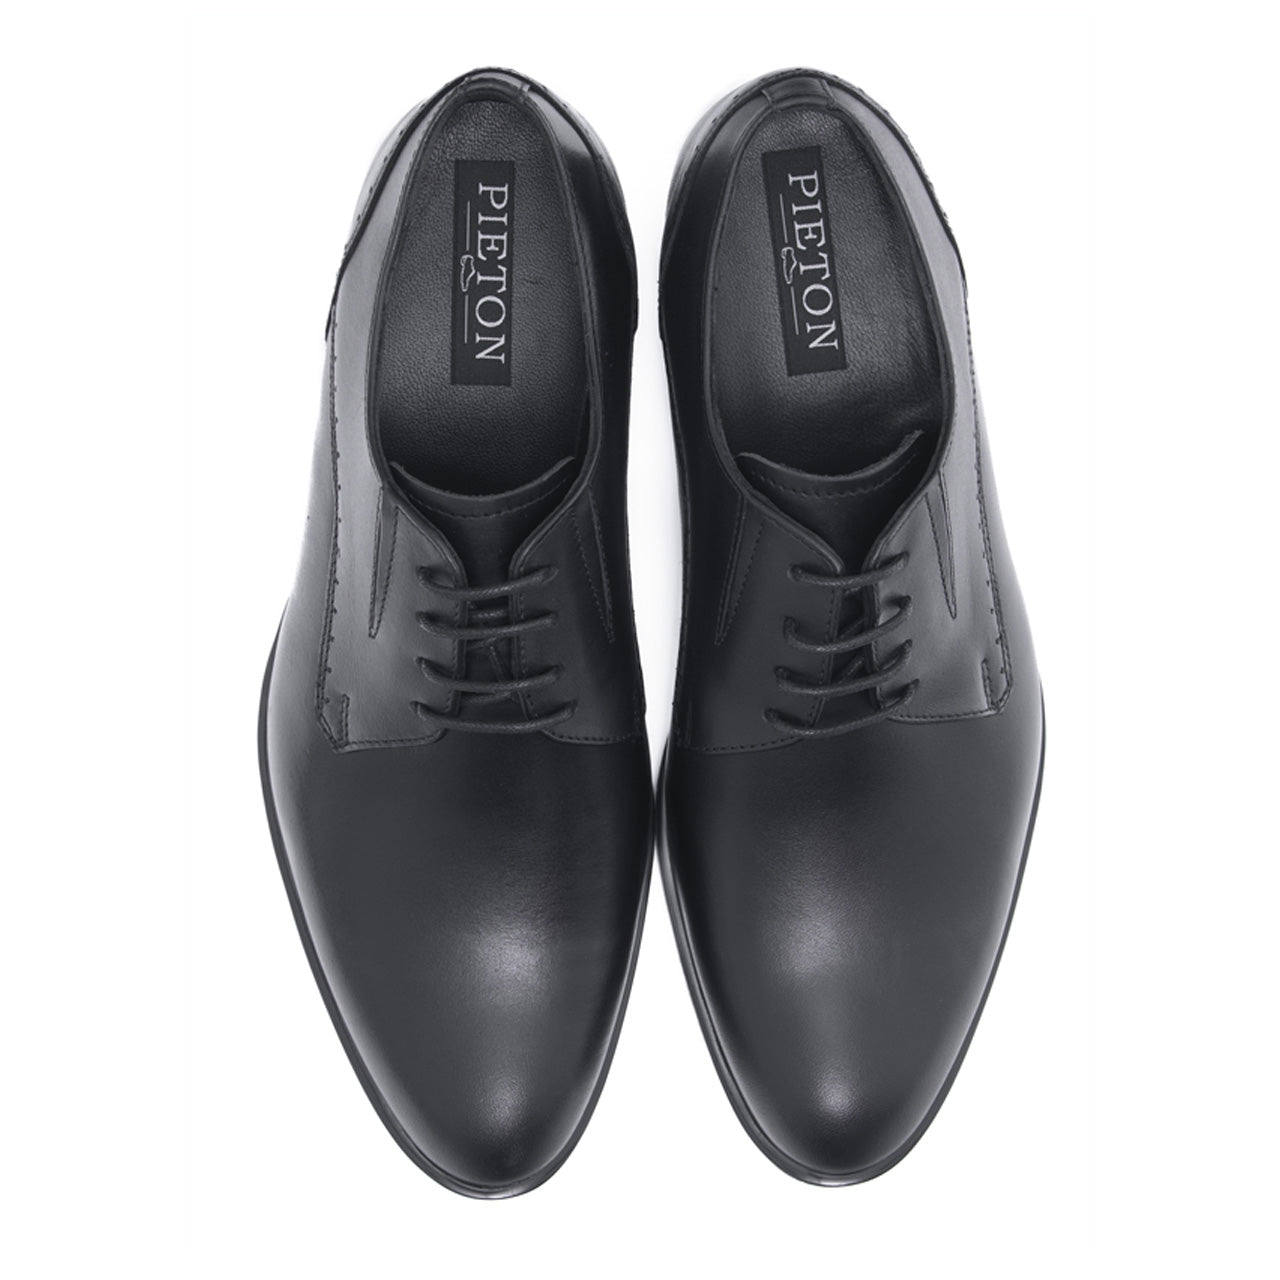 Pantofi eleganti barbati Formal negru